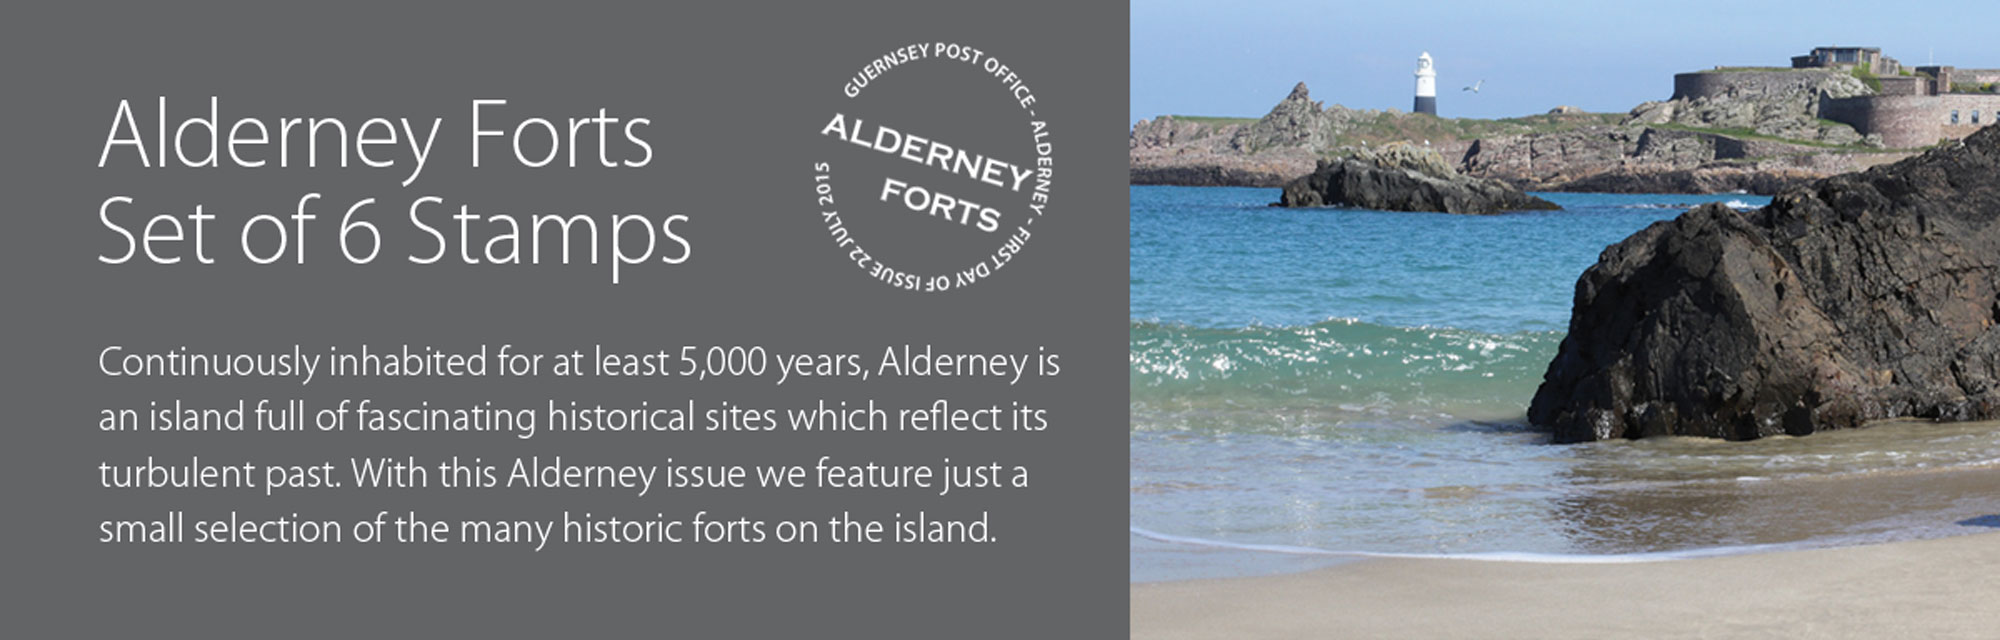 Alderney Forts